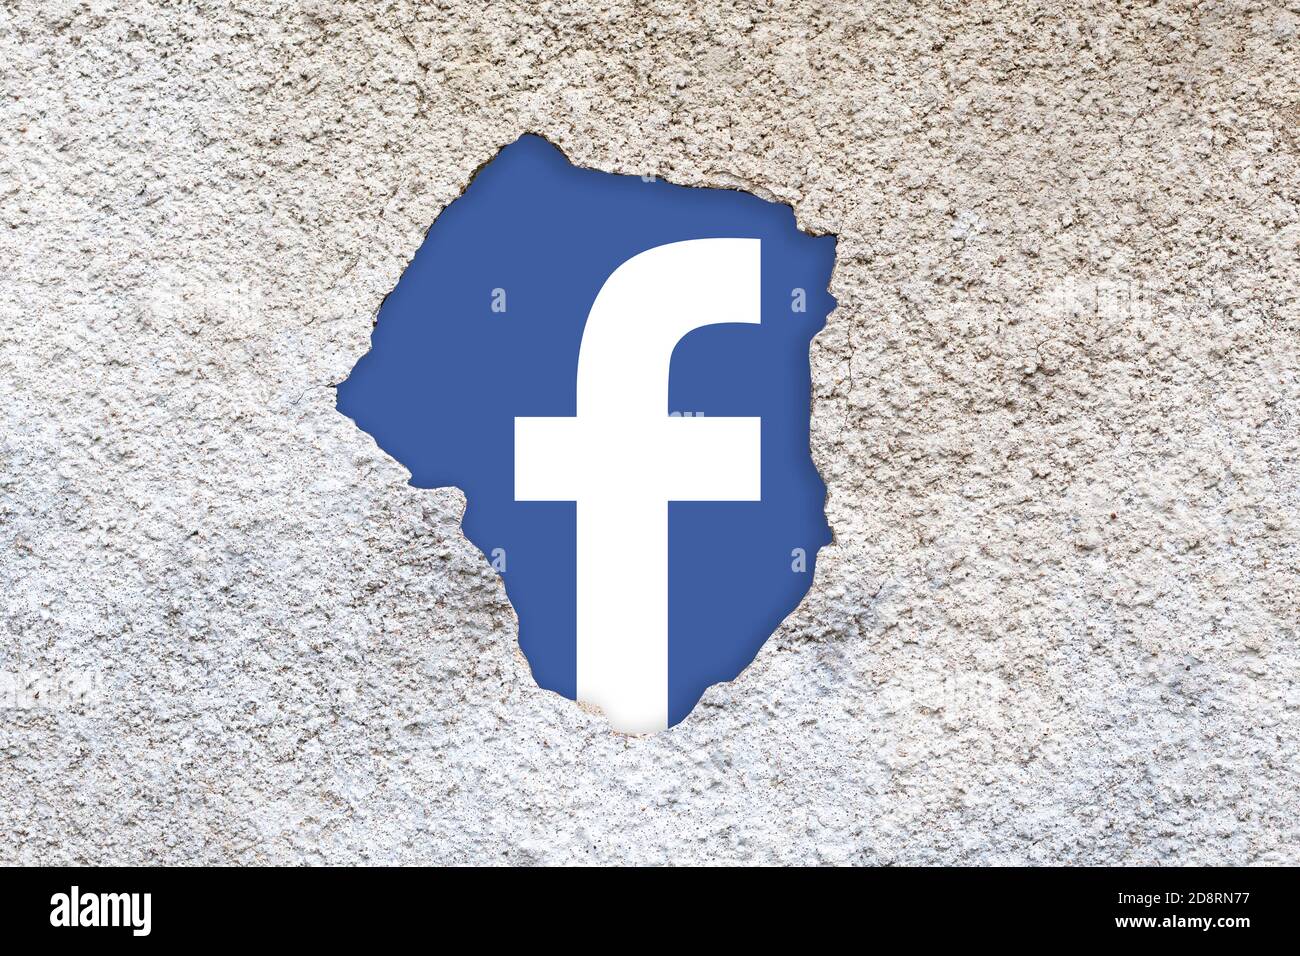 Facebook-Firmenlogo hinter einem Wandriss versteckt, Datenschutz, Social-Media-Themen, Datenschutz Stockfoto